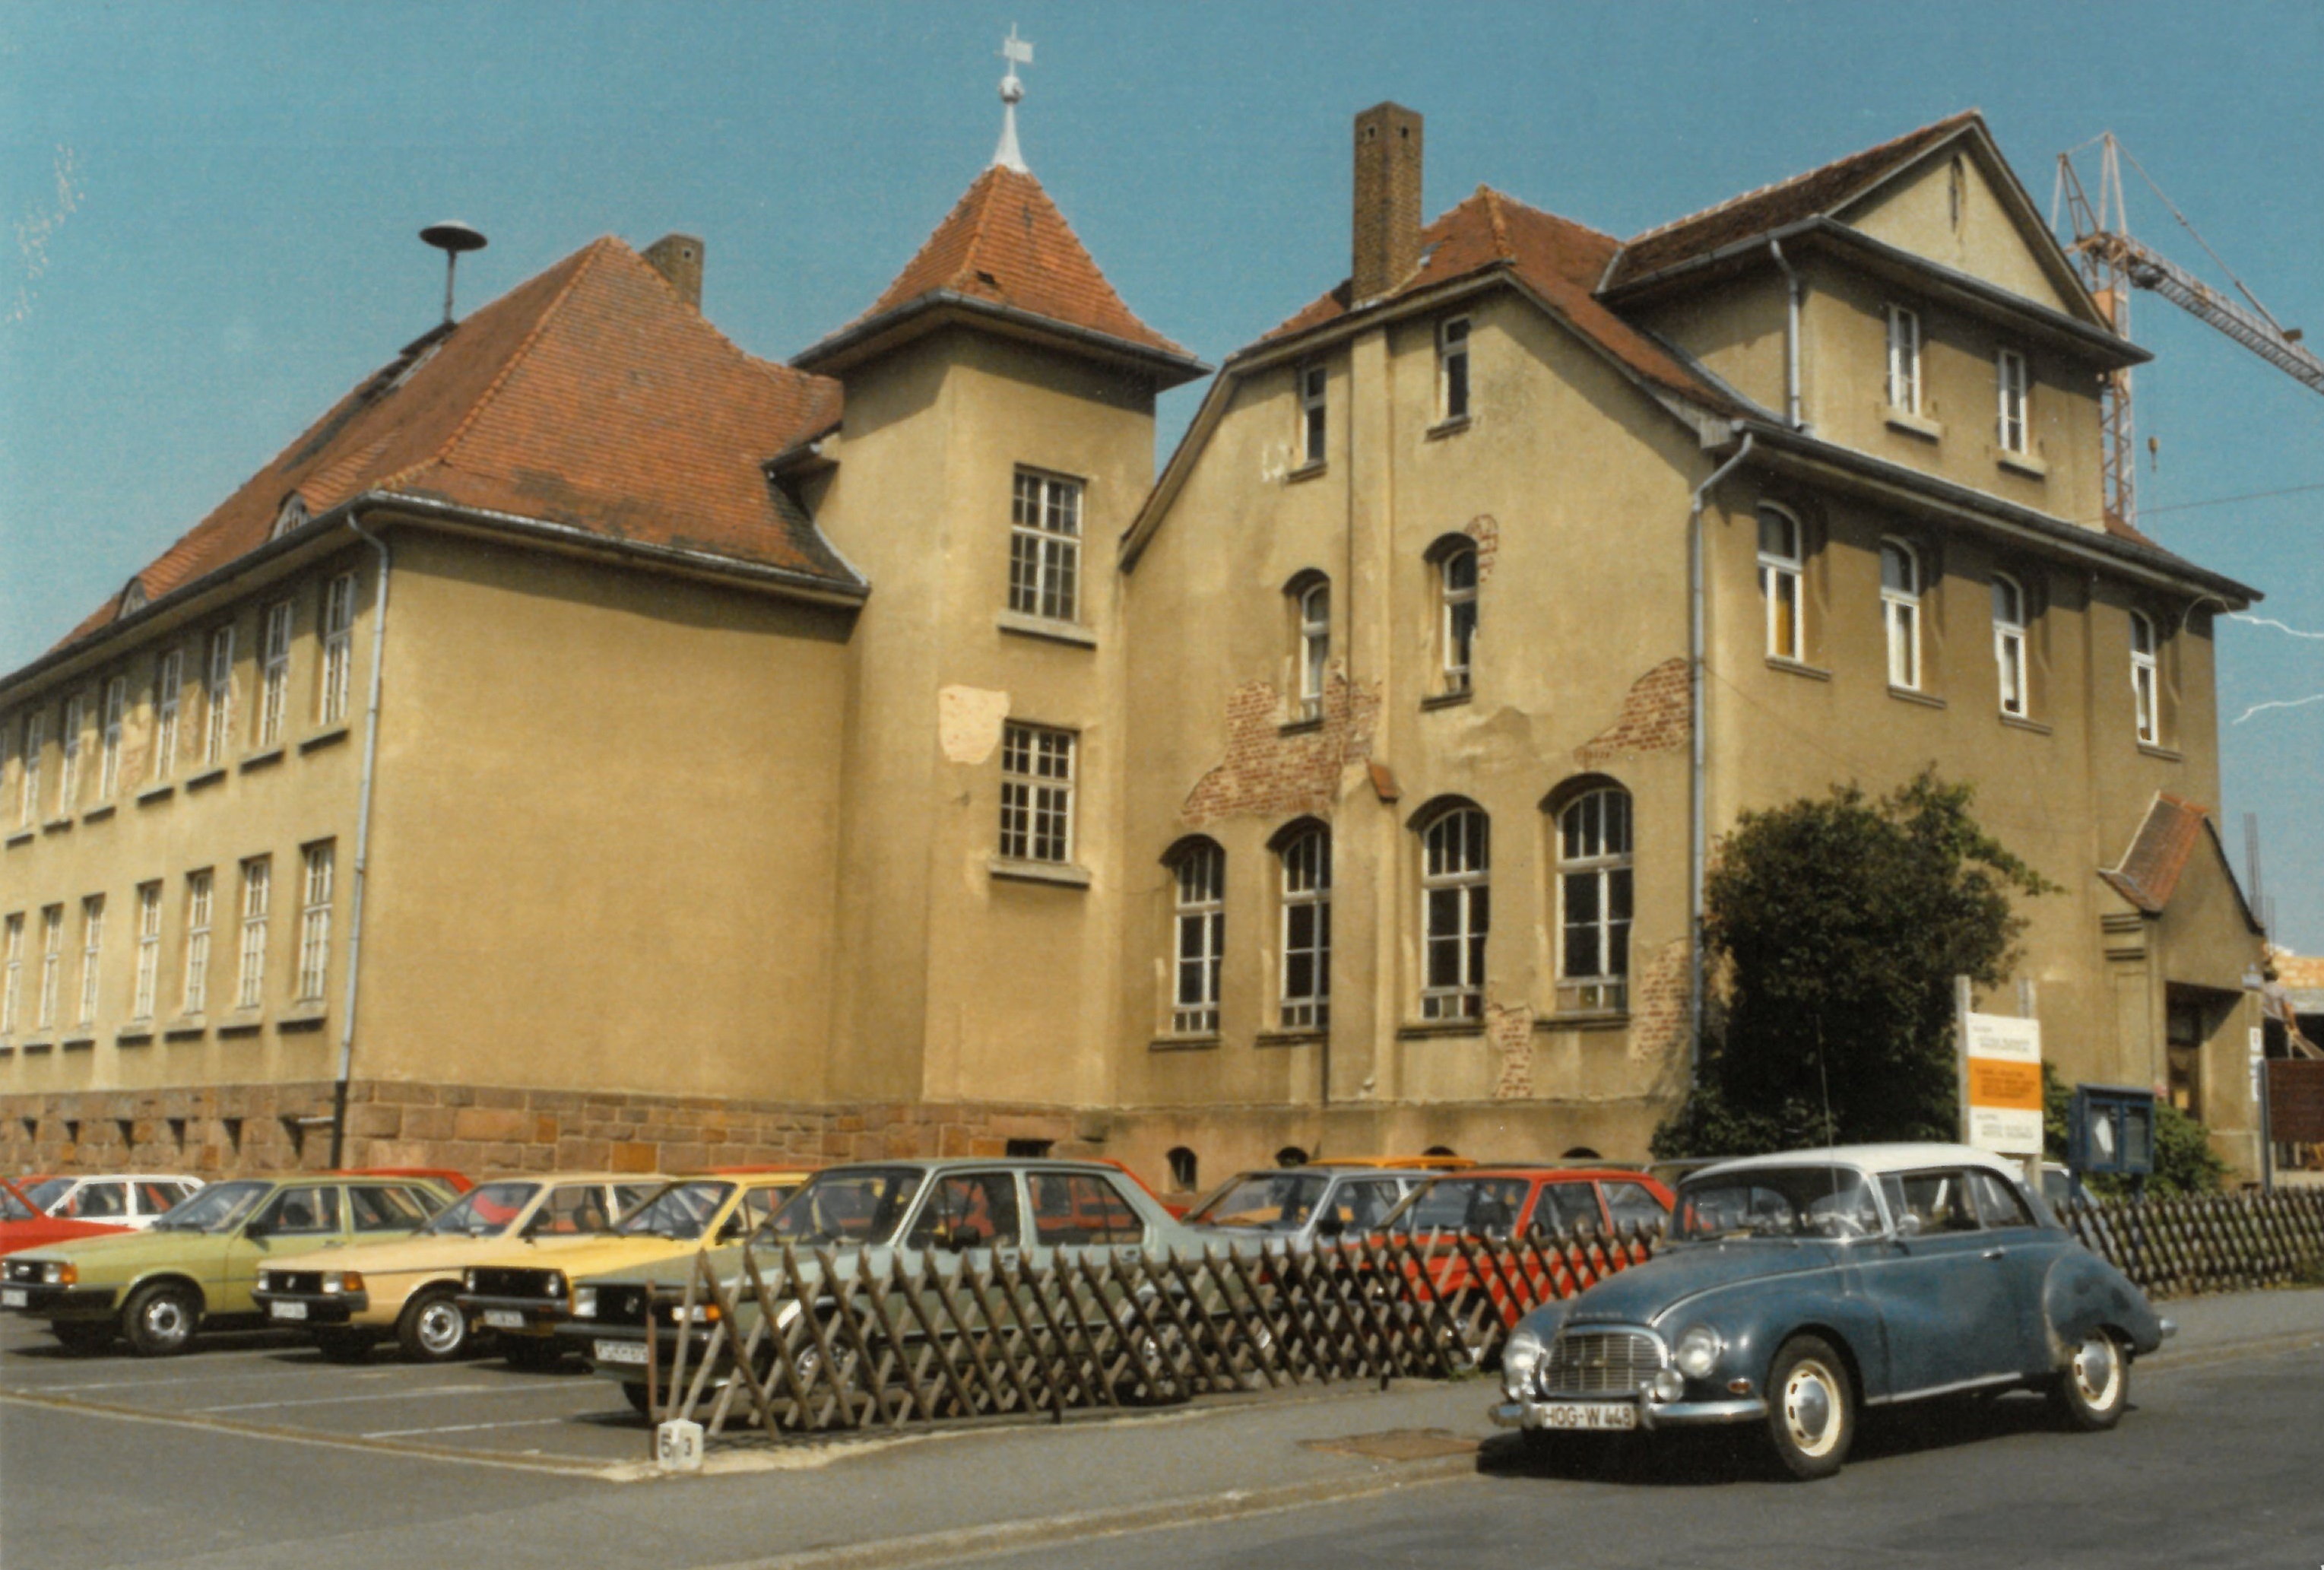 Die alte Schule vor dem Abriss in 1972. @Gemeinde Niestetal